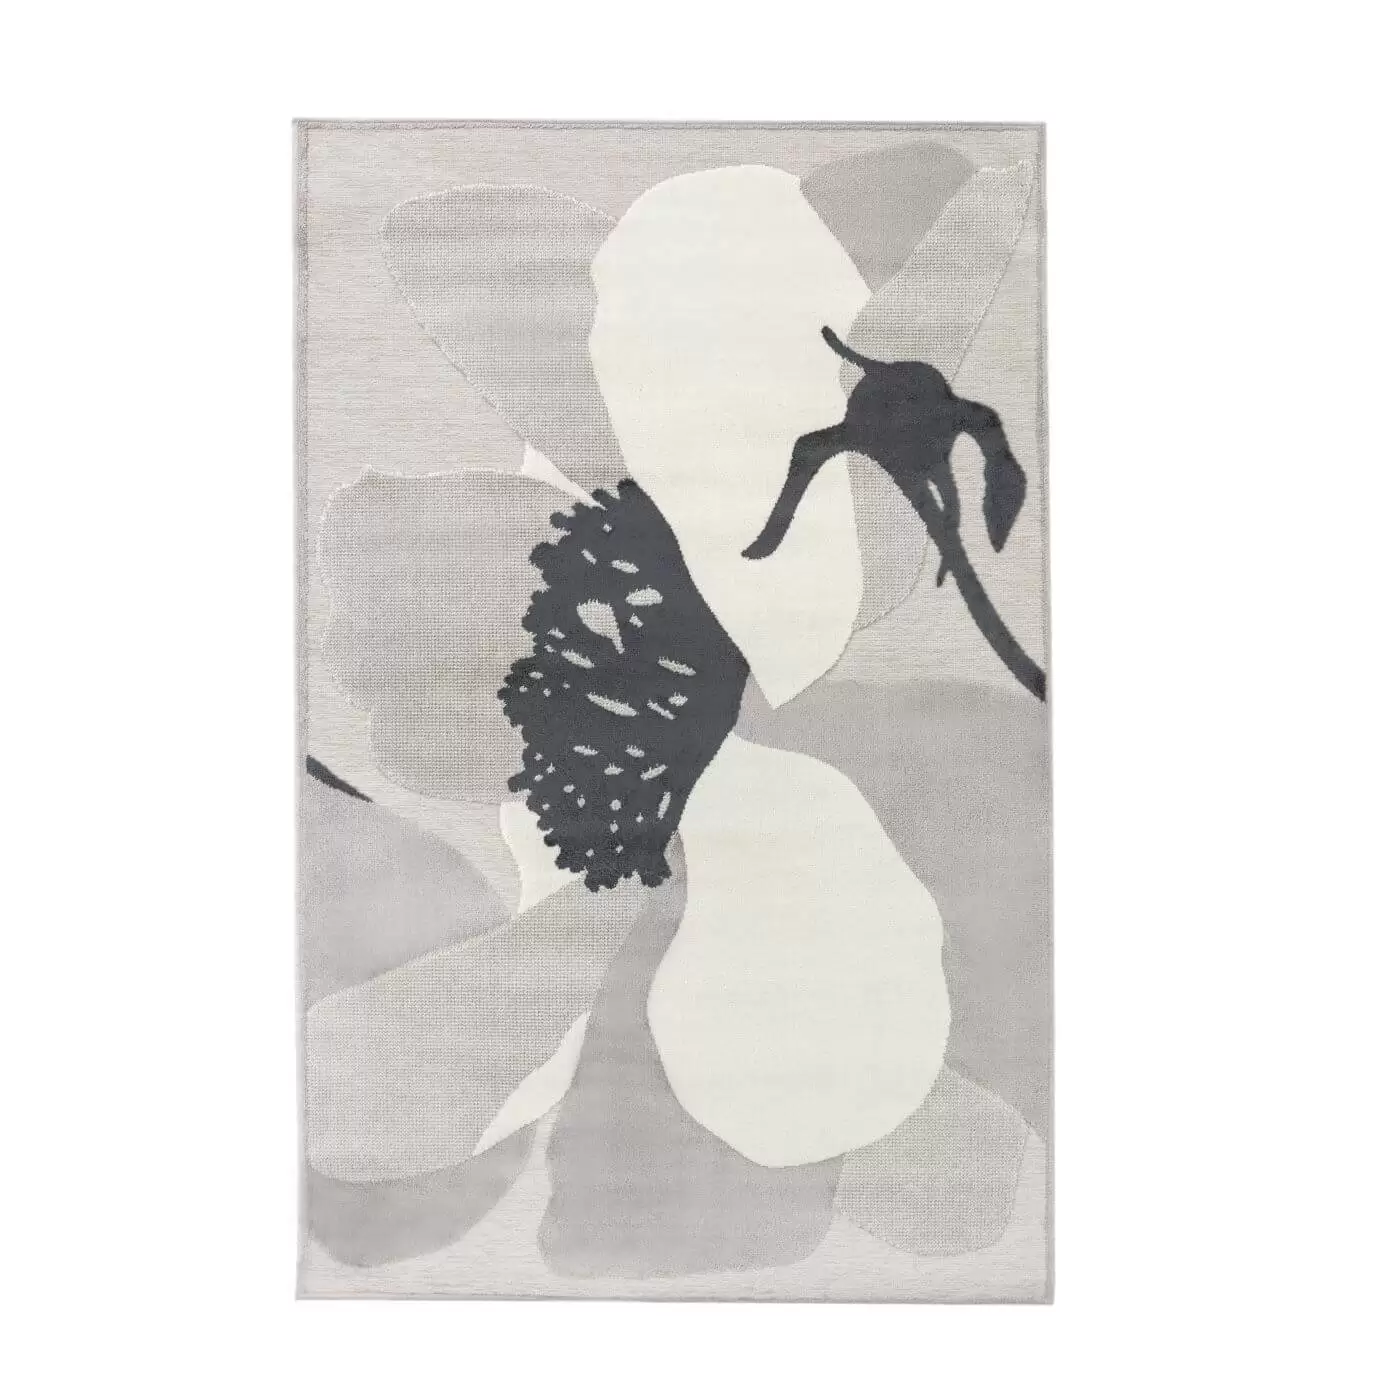 Dywanik ozdobny beżowy kwiat MIRANDA. Cienki dywanik z kwiatem beżowy jasny do salonu lub sypialni. Nowoczesny skandynawski design